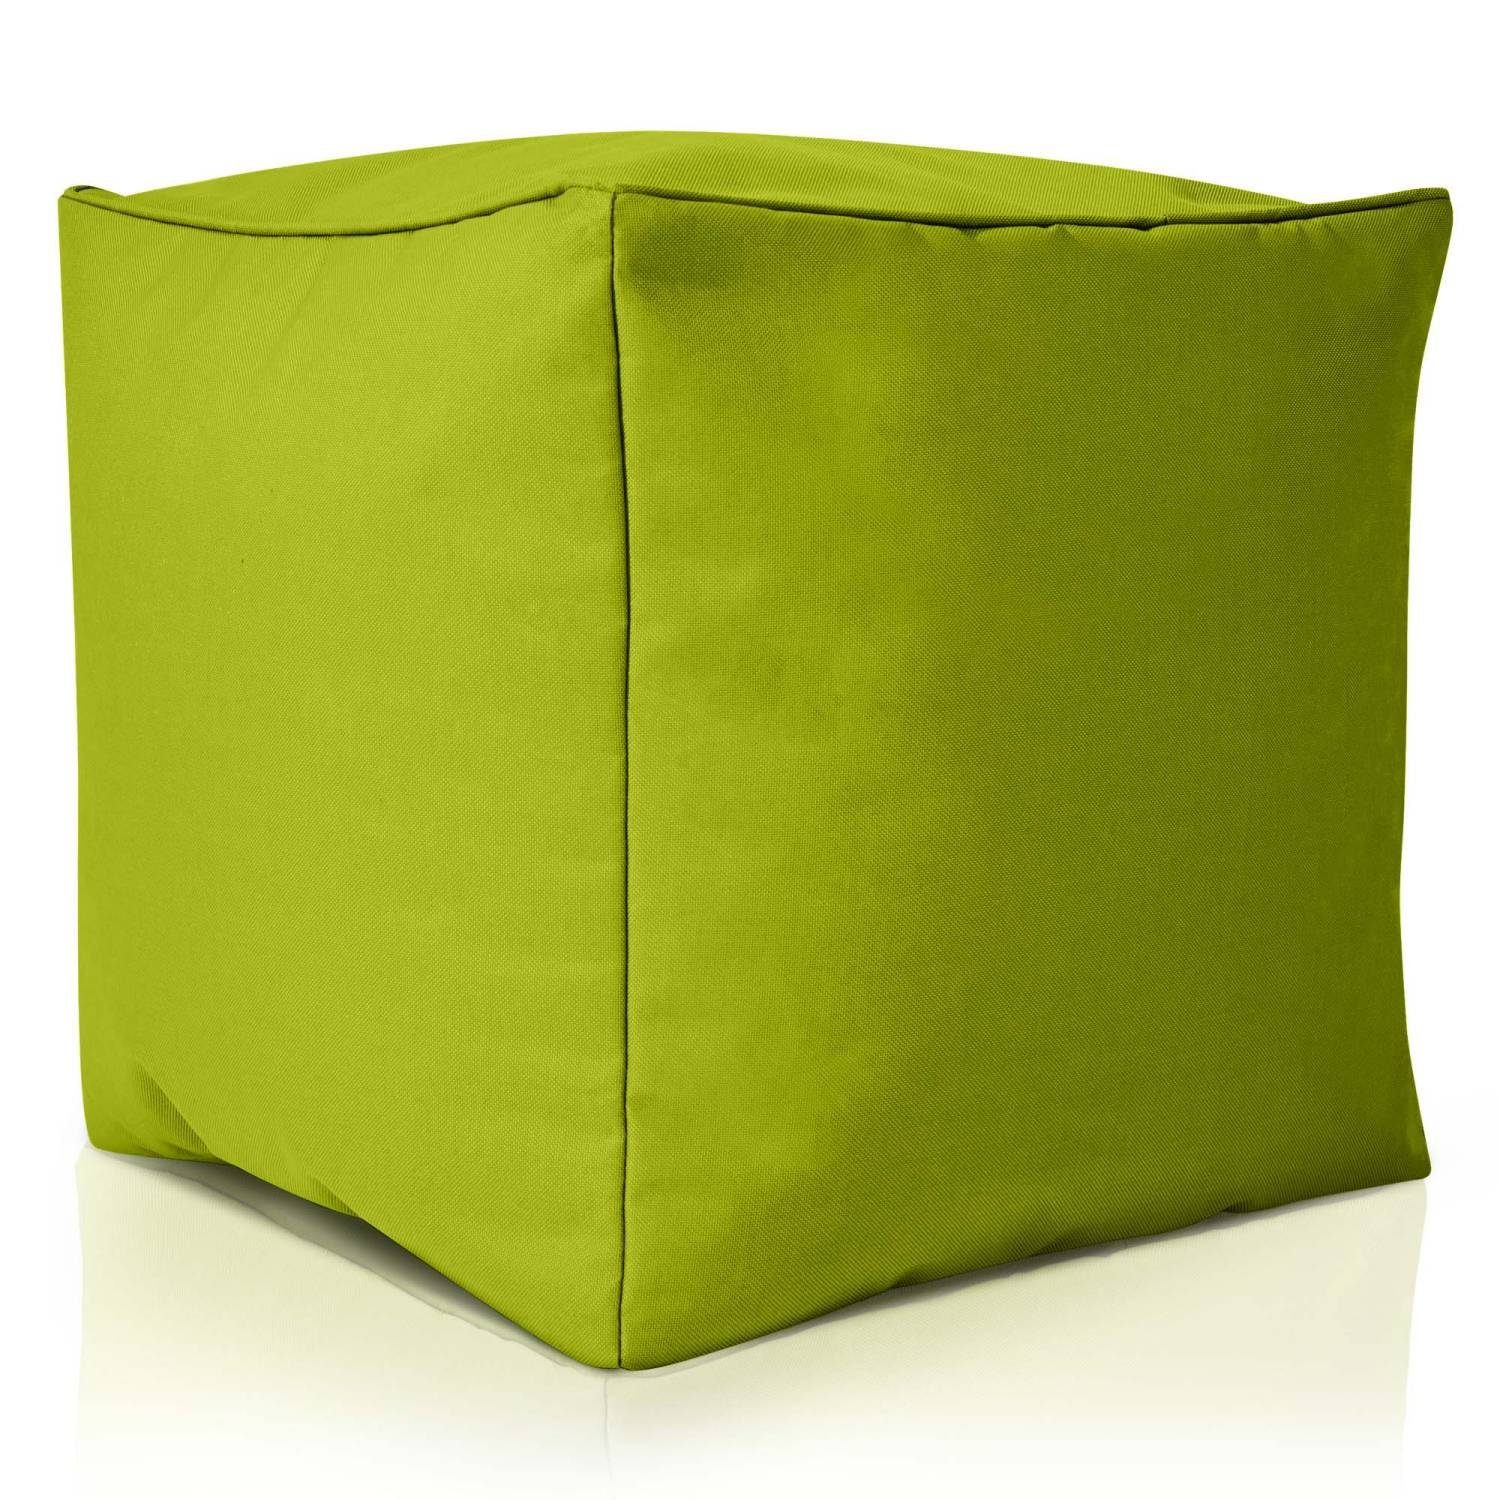 Füllung, Fußkissen 40x40x40cm für - EPS-Perlen Sitzsack Sitzhocker Kinder Sitzkissen Sitz-Pouf Cube Green und Grün (Hocker Fußhocker mit Erwachsene Sitzsäcke), Bean Bodenkissen für